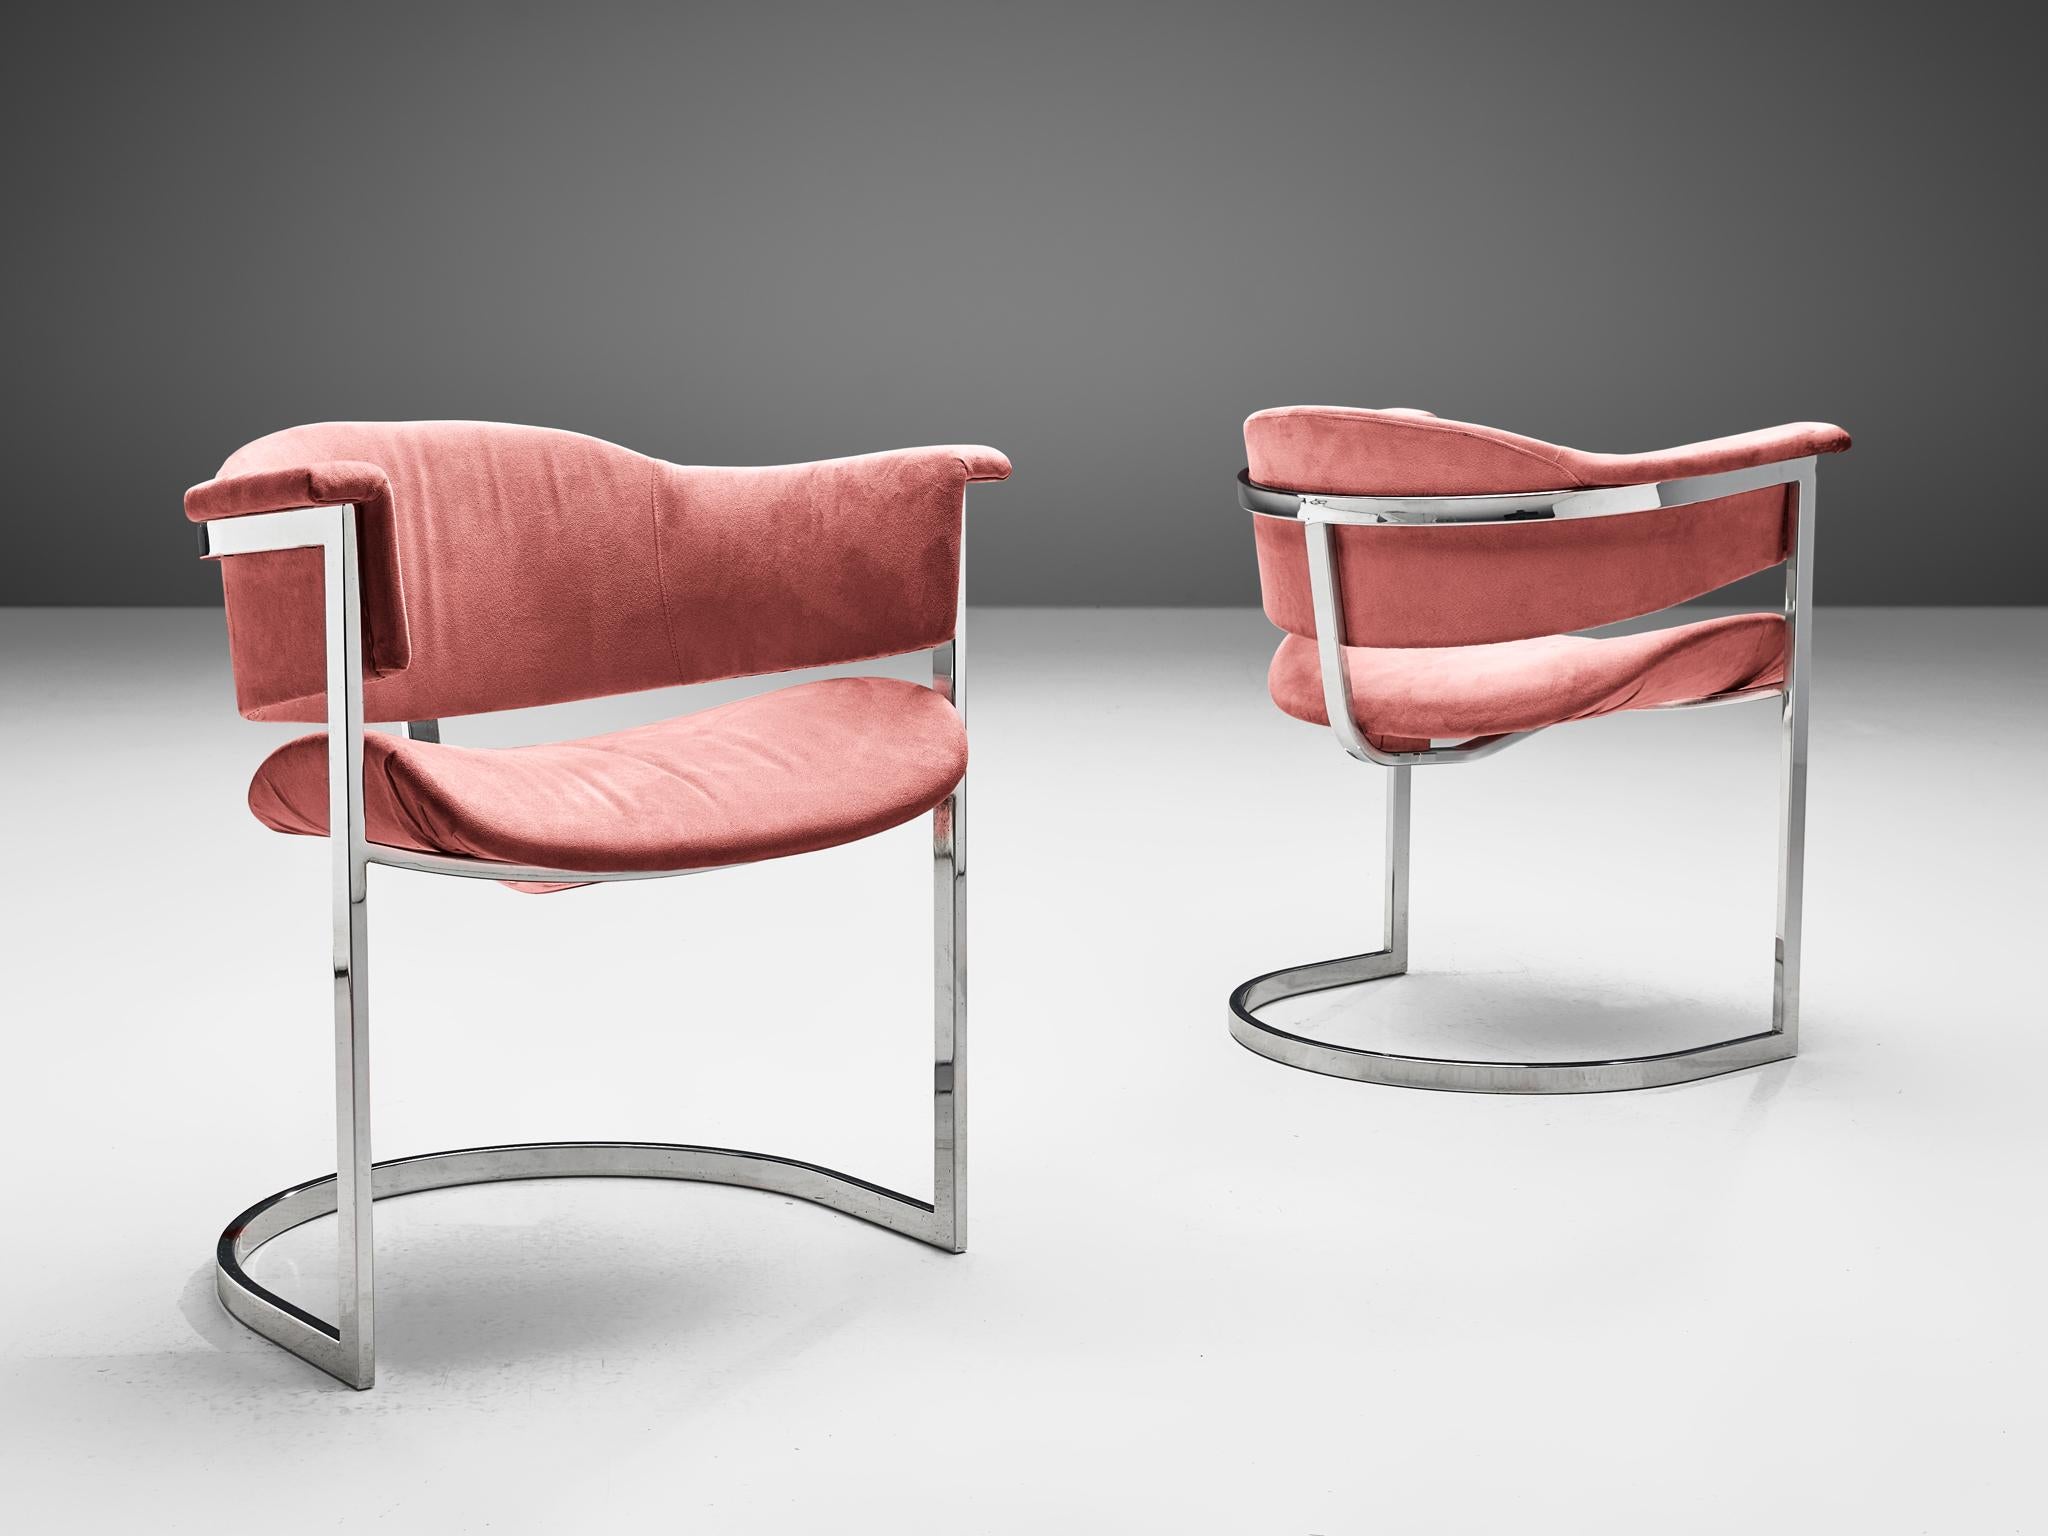 Vittorio Introini pour Mario Sabot, paire de chaises de salle à manger, acier chromé, tissu, Italie, années 1970.

Paire de chaises de salle à manger en porte-à-faux avec une structure en acier plié et chromé, conçues par Vittorio Introini dans les